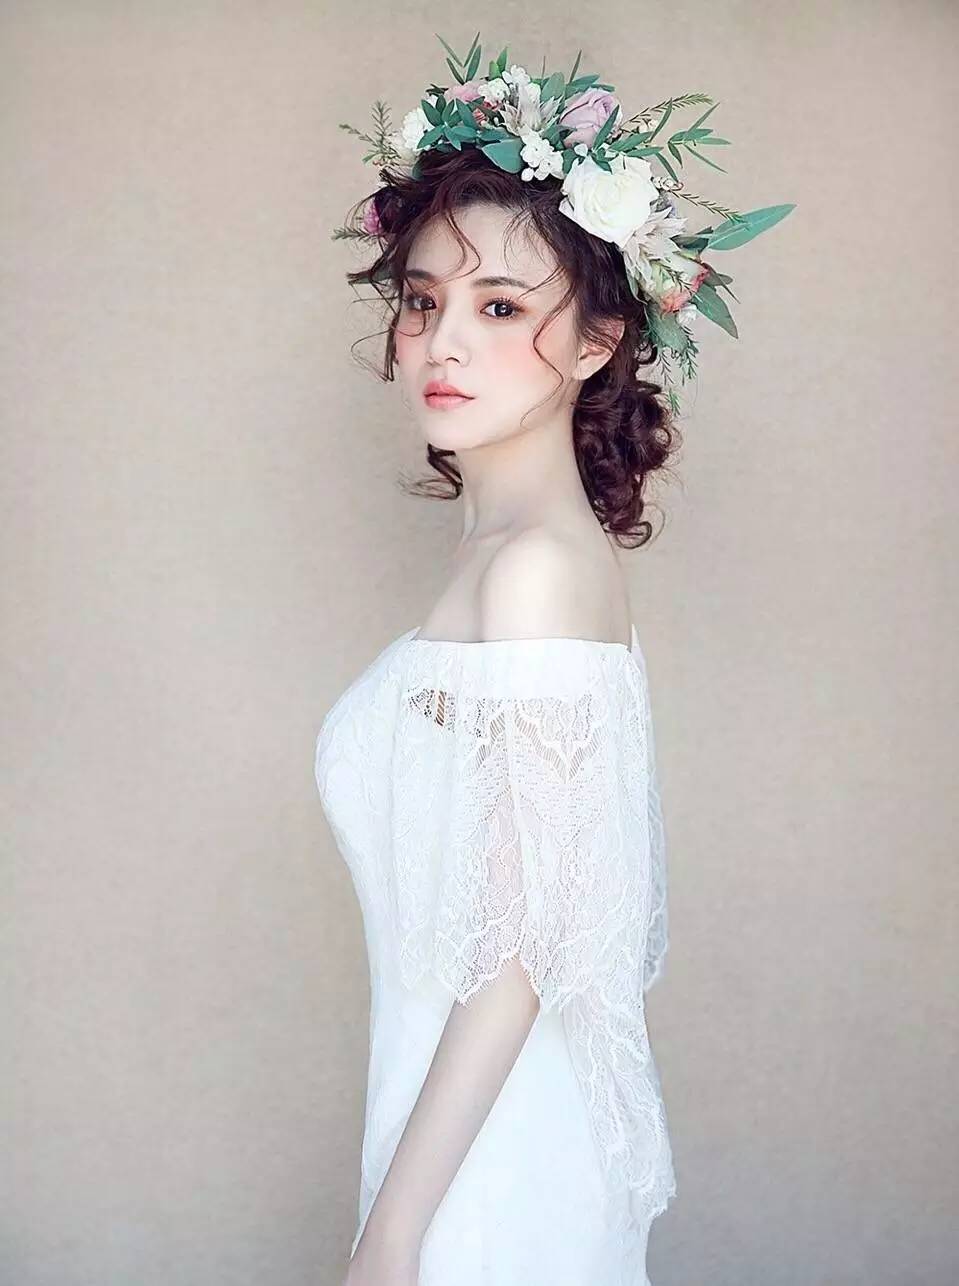 对于新娘来说,仙气十足的森系浪漫发型又怎么能少?